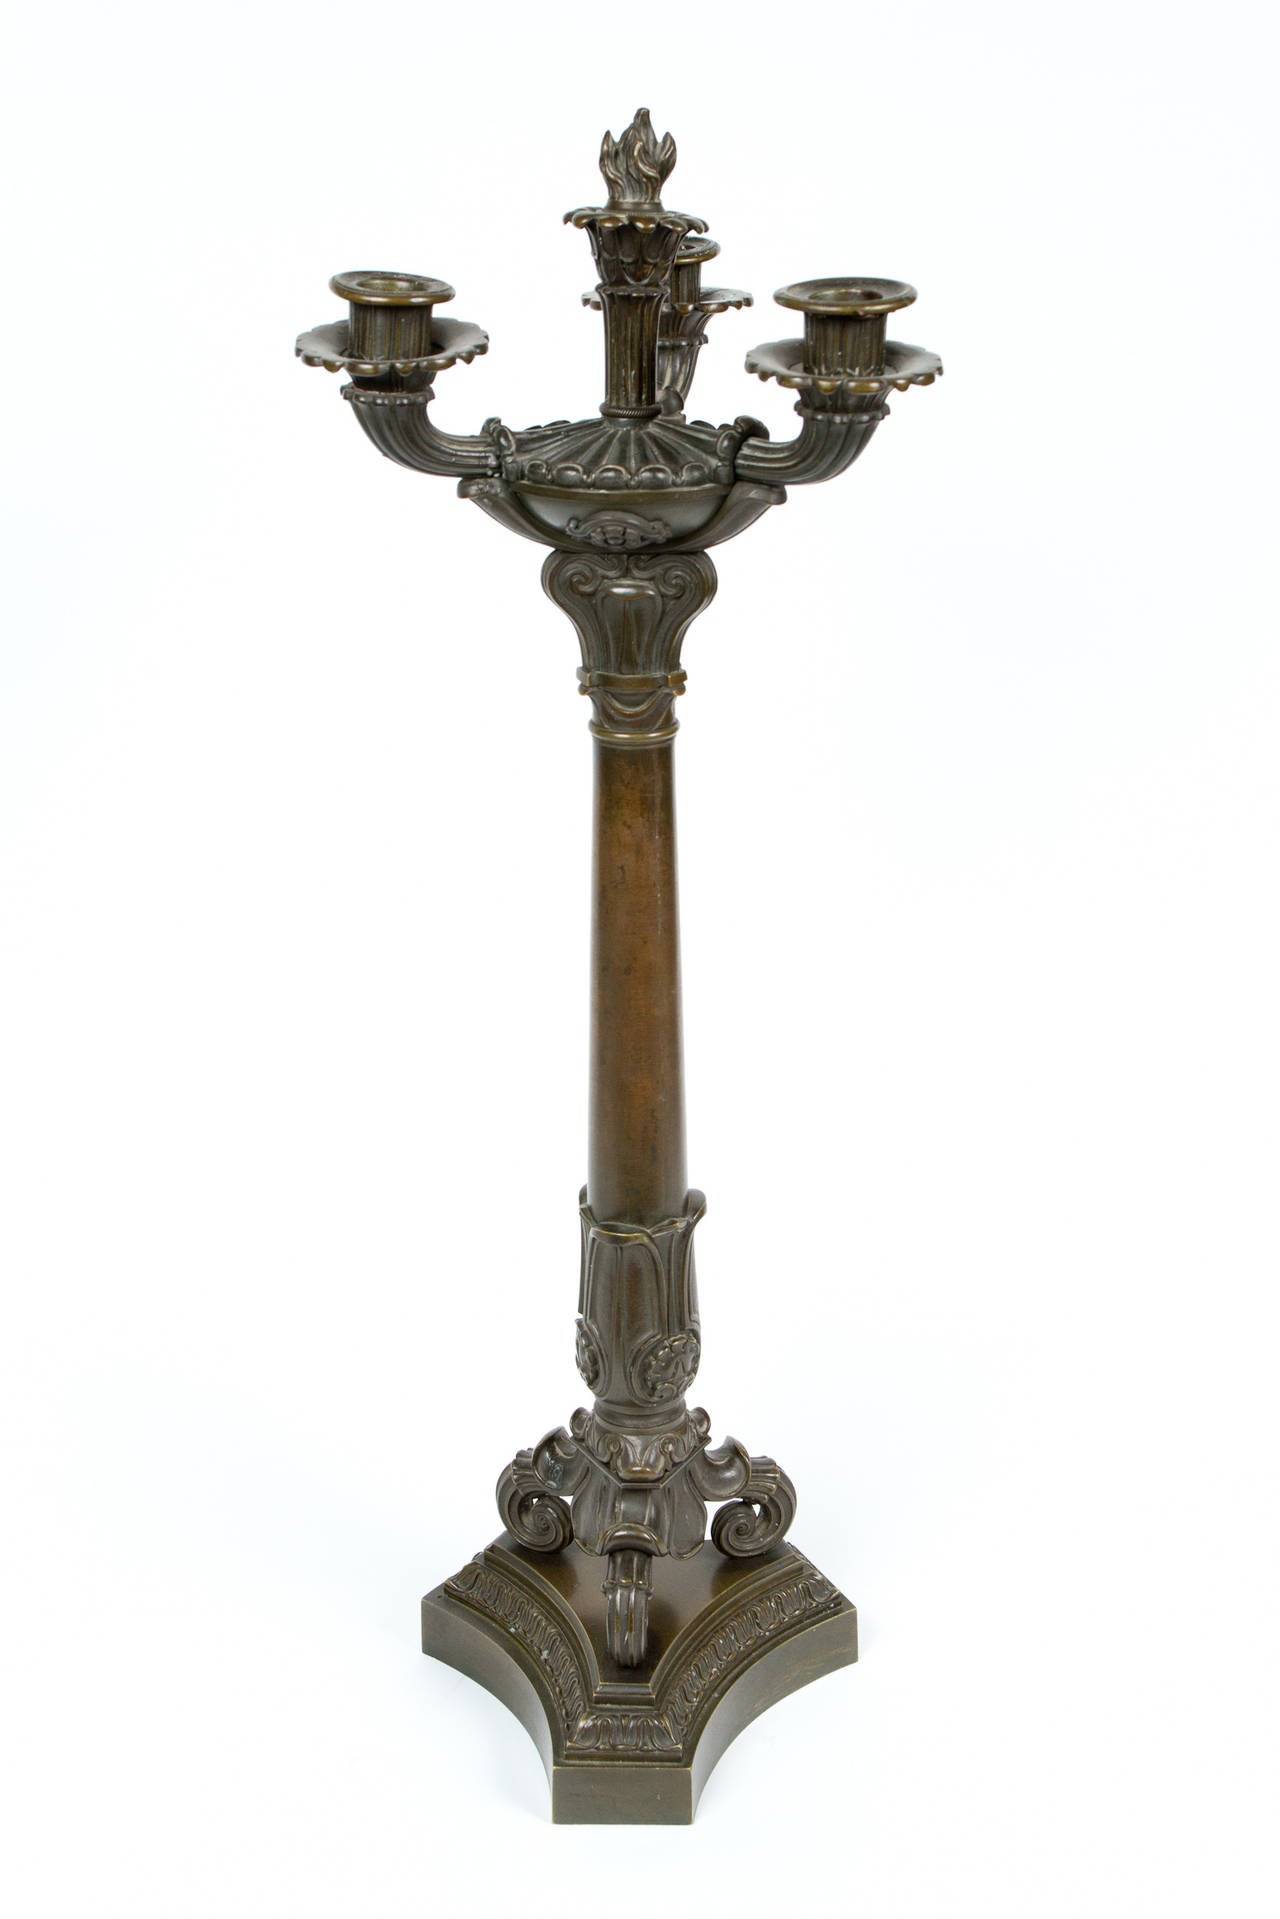 Grande paire de candélabres d'époque Charles X, en bronze patiné, datant du XIXe siècle.